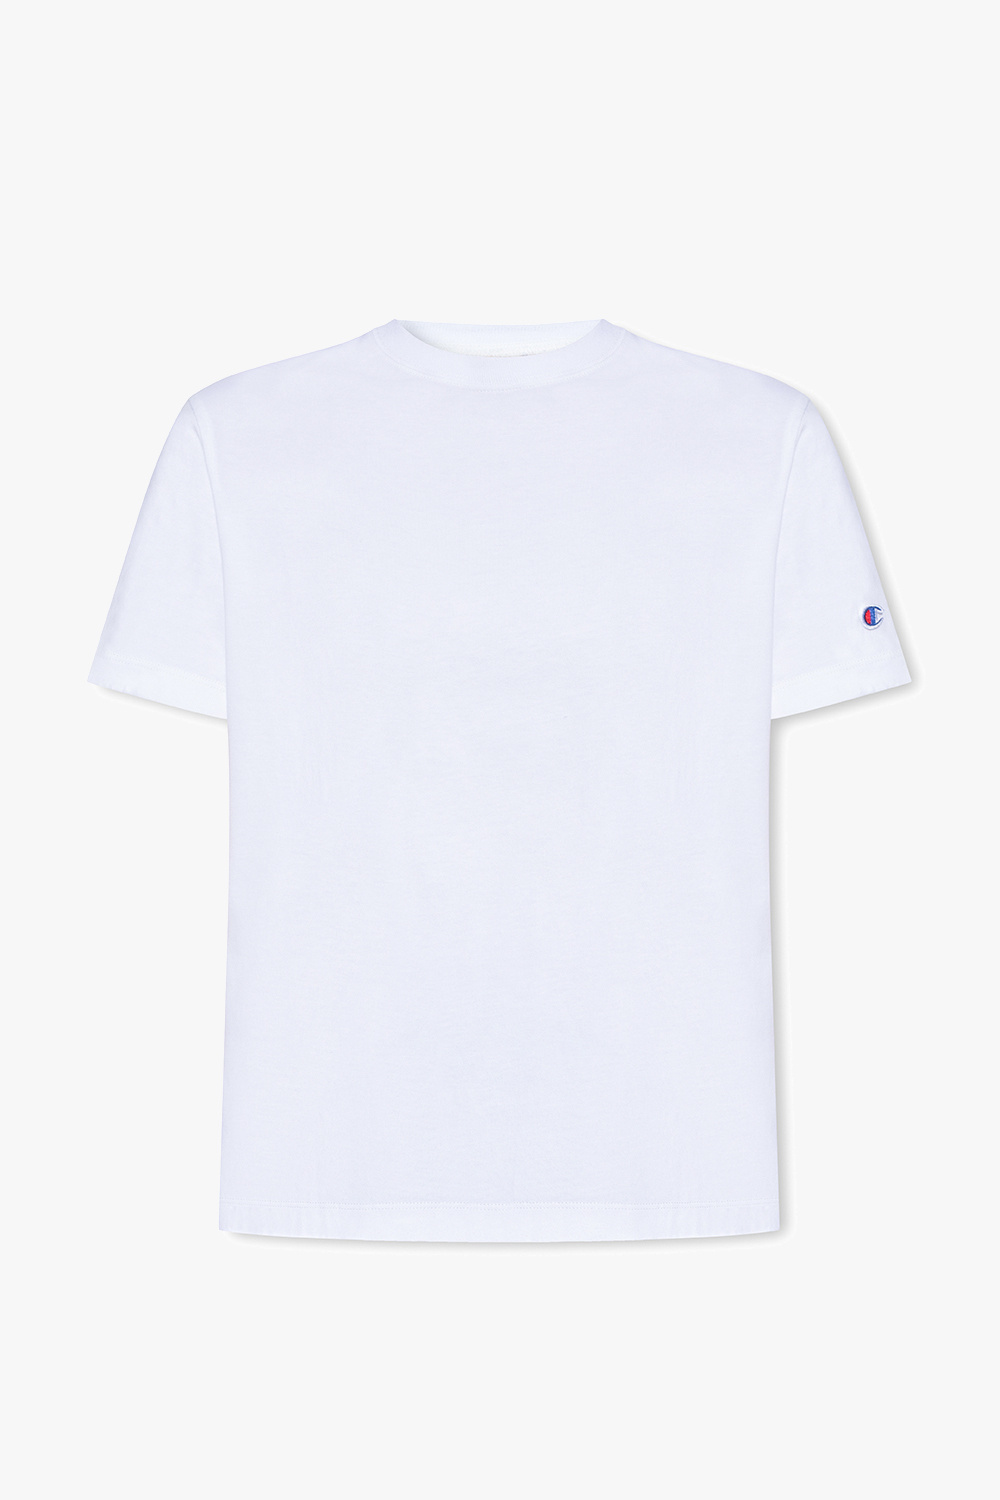 IetpShops - og med - t-shirt-BHer - hvid sort fra Norway with 2 Hunkemoller Pakke forede T shirt logo i Champion White